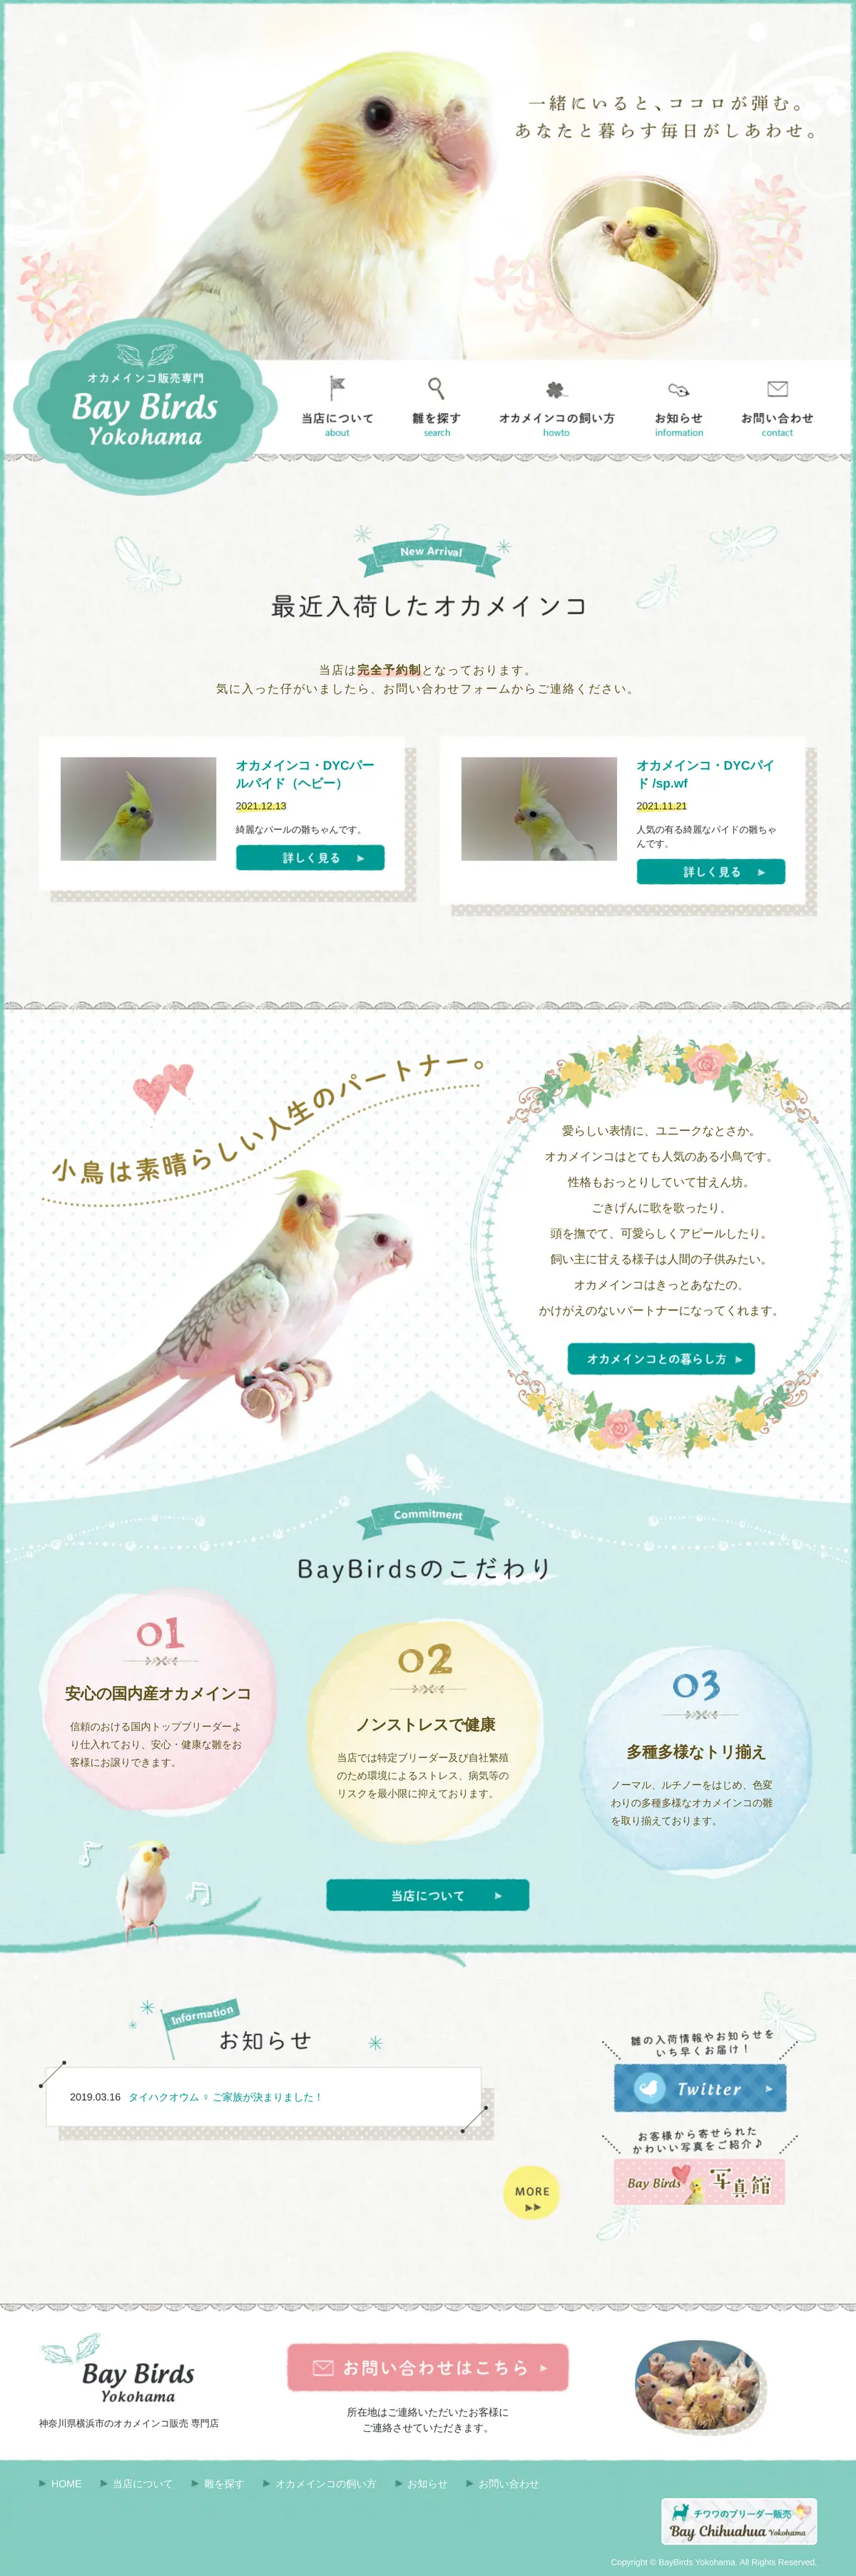 キャプチャ画面 会社名:ベイバードヨコハマプロジェクト名:Bay Birds Yokohama 画面名:全国トップ デバイス名:SPカテゴリ:動物・ペットタグ:SP,全国トップ